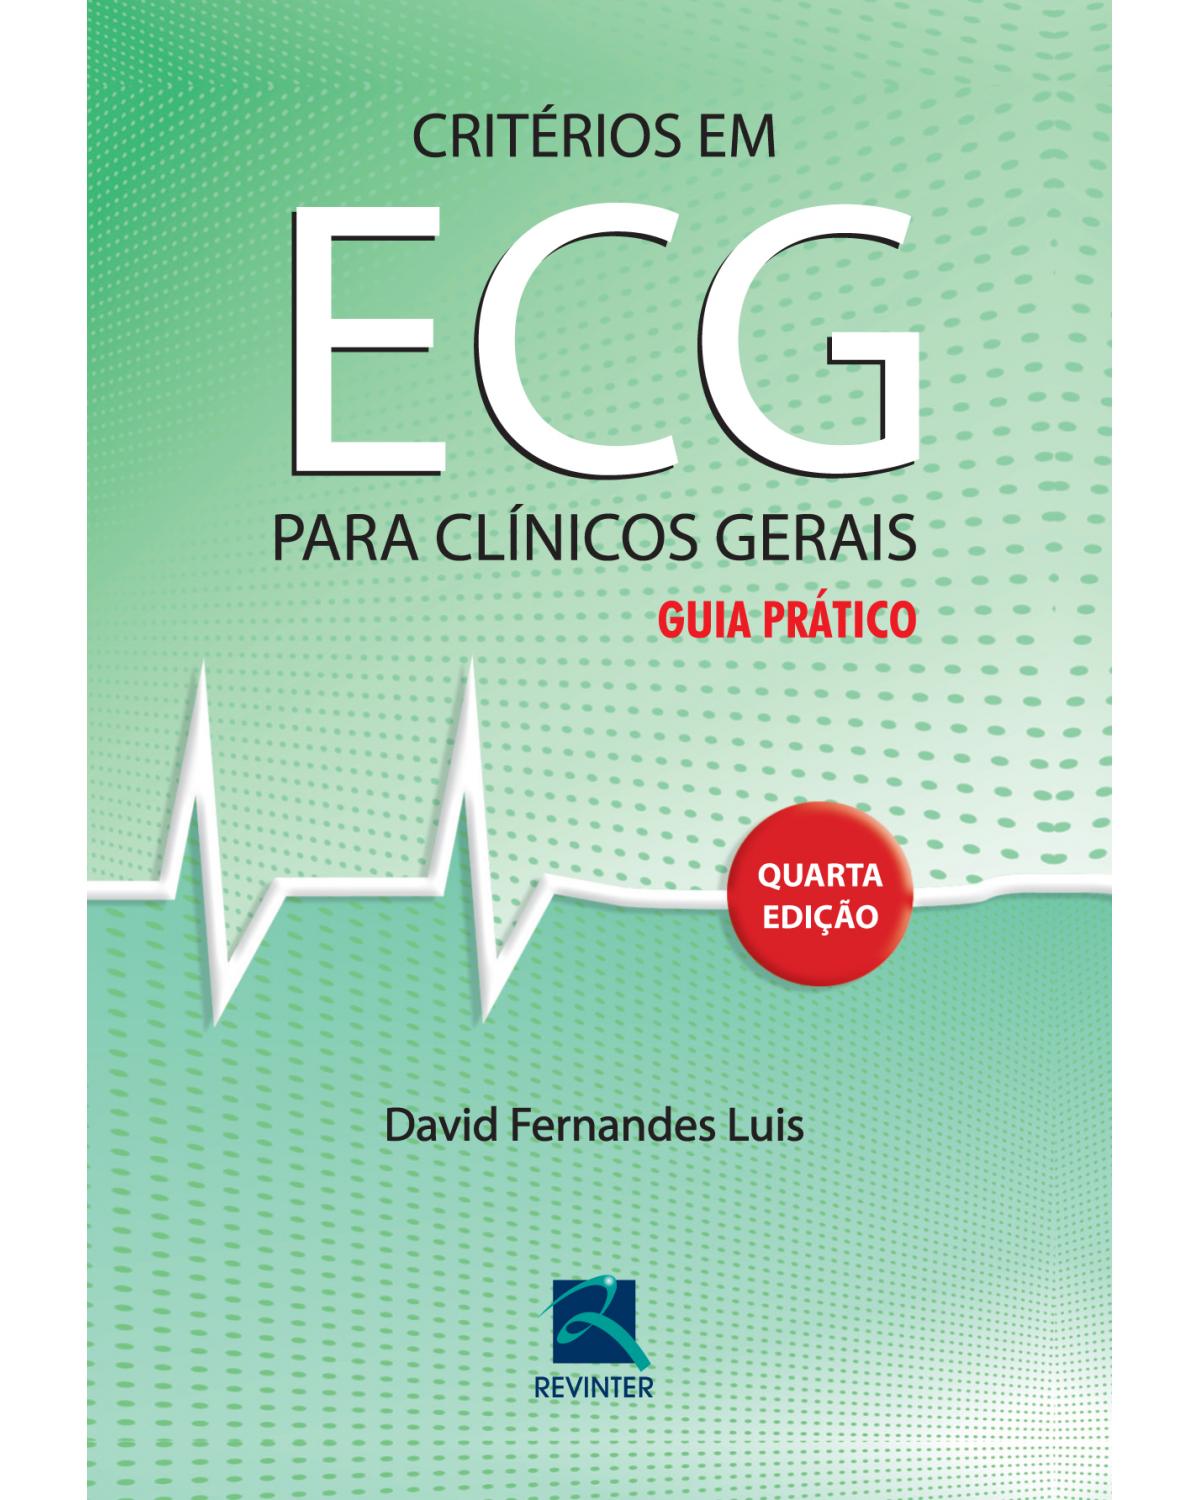 Critérios em ECG para clínicos gerais - guia prático - 4ª Edição | 2012